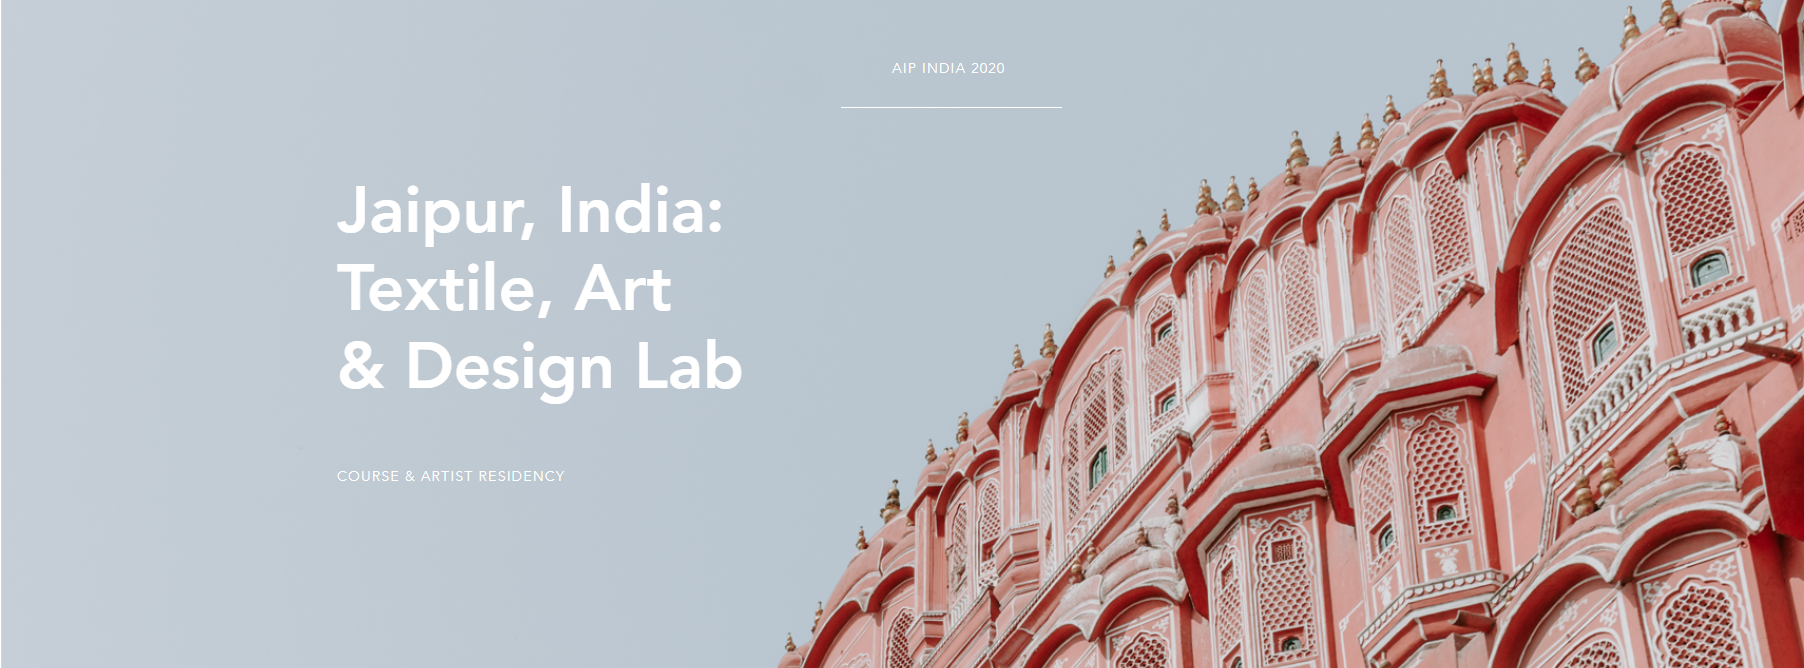 Jaipur, India: Textile, Art & Design Lab